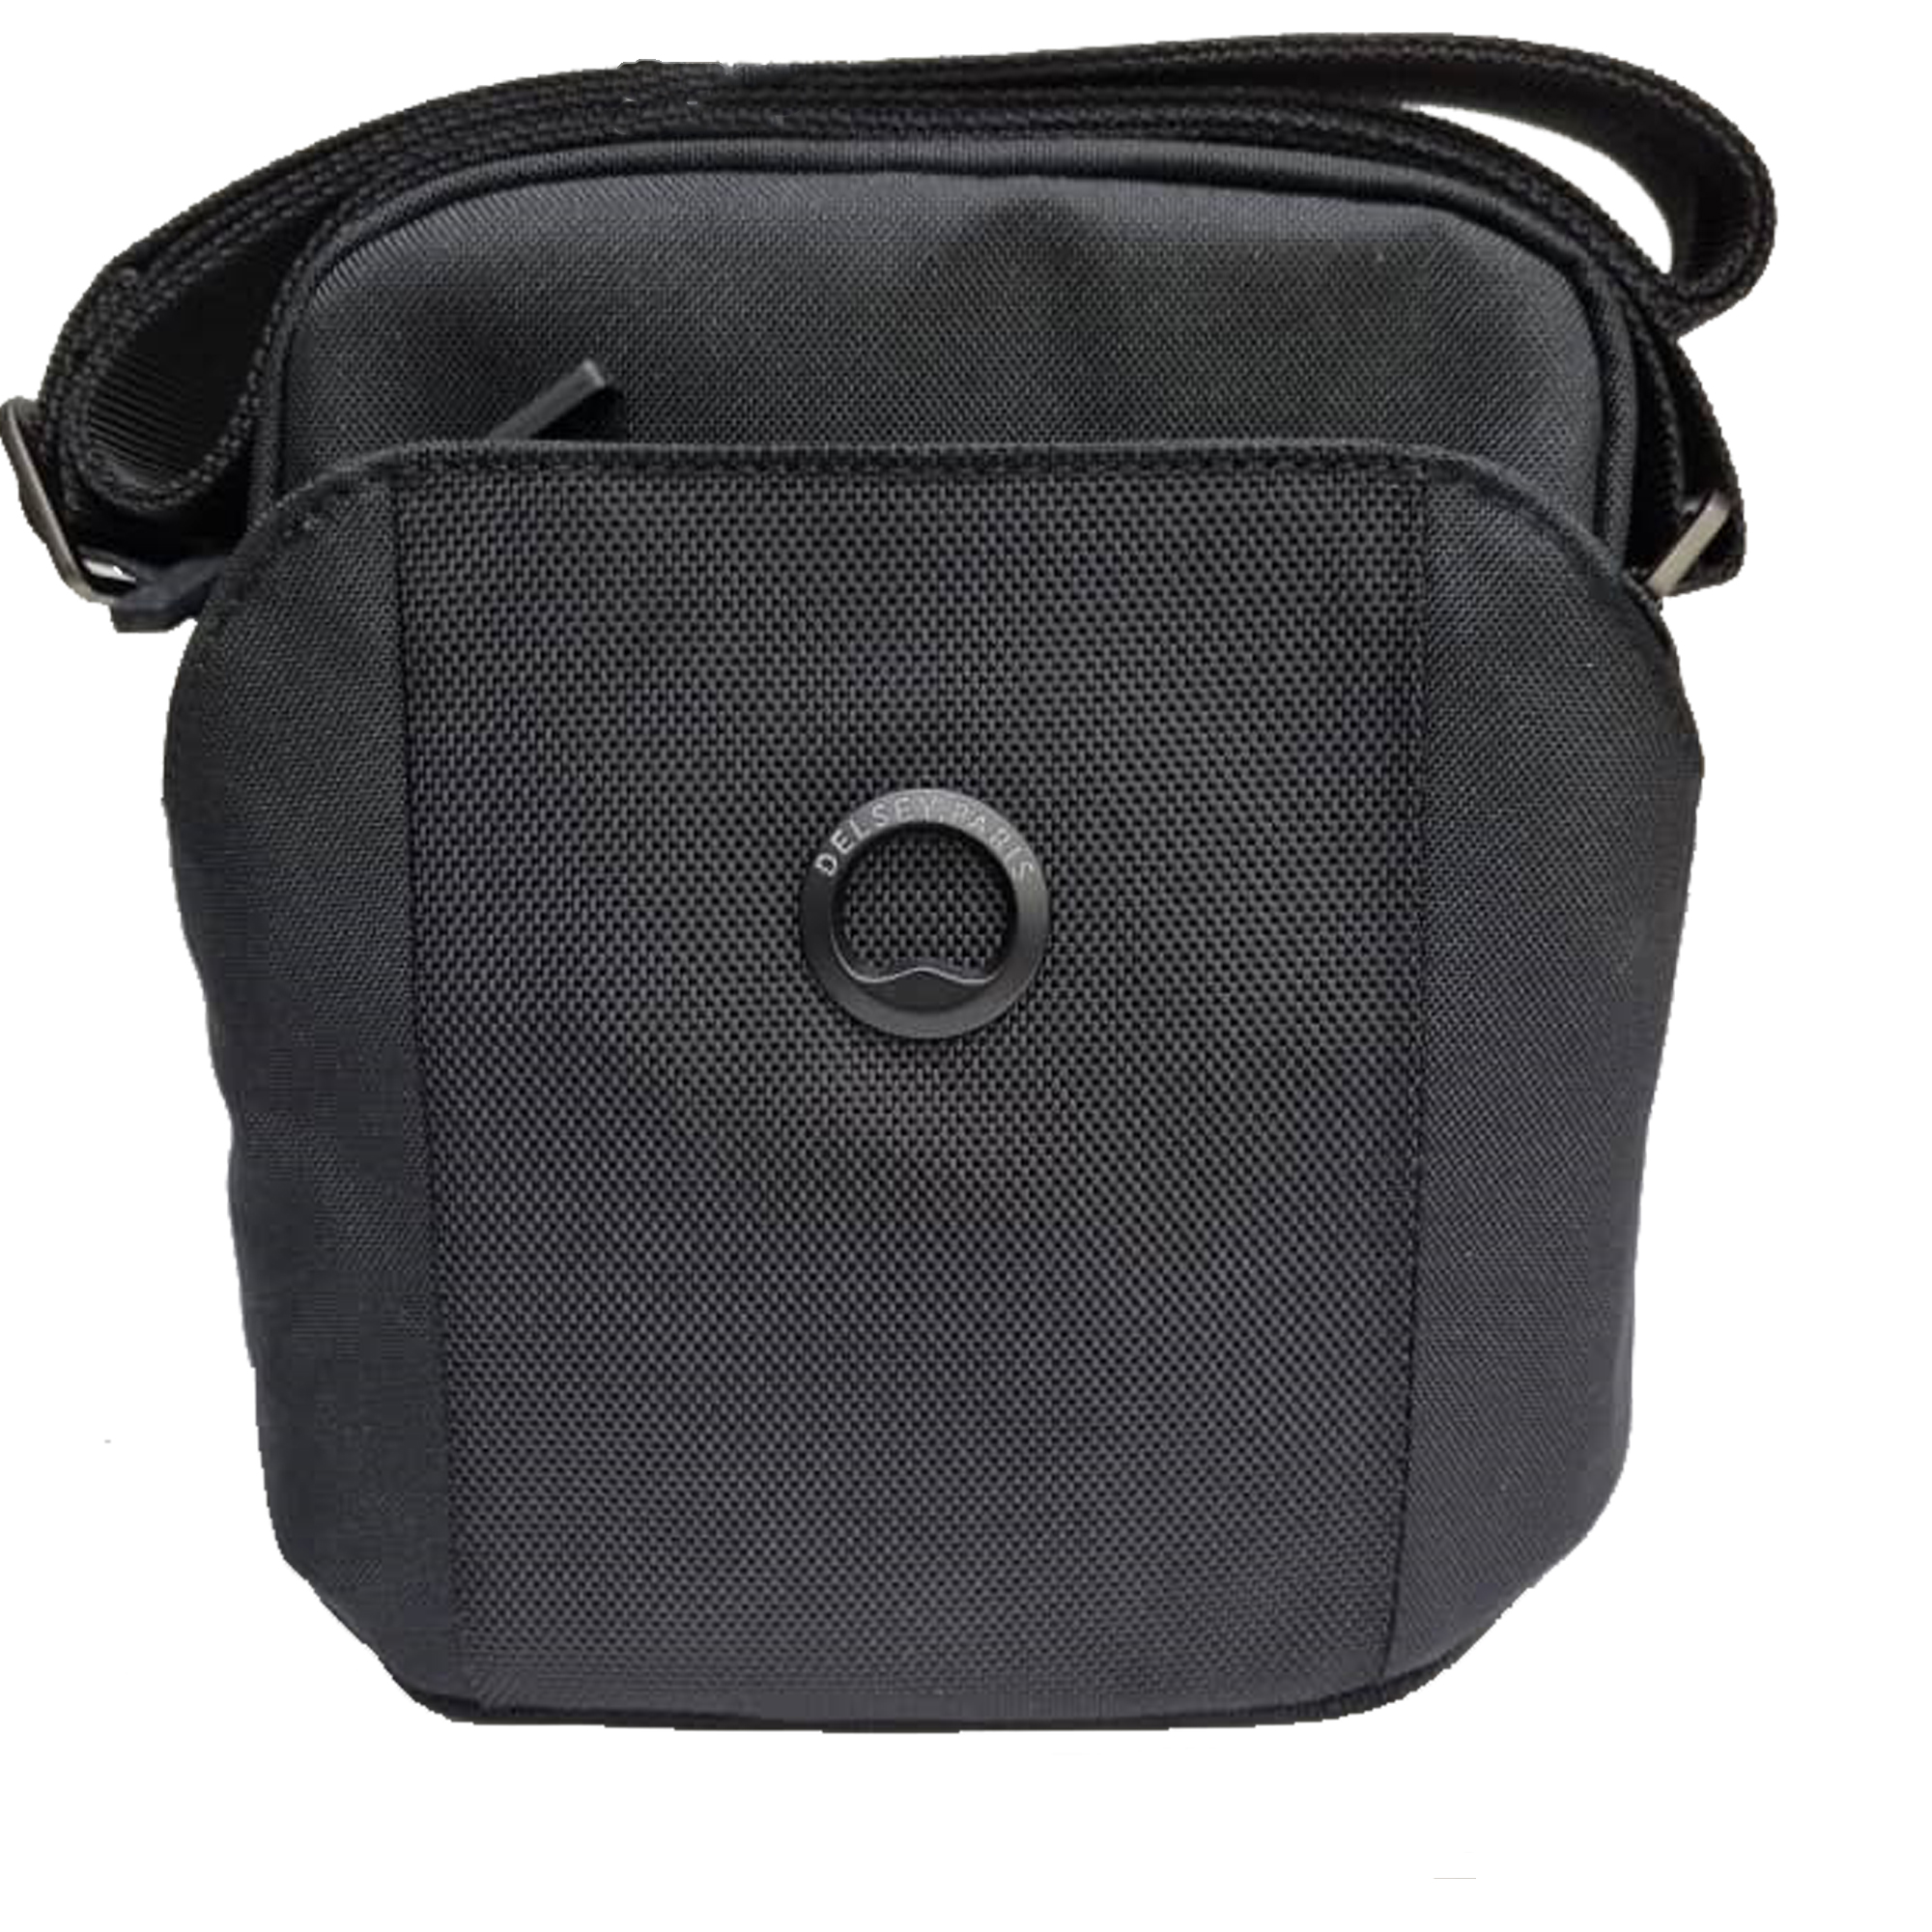 نکته خرید - قیمت روز کیف دوشی دلسی مدل PICPUS NEW کد 00-3354112 خرید